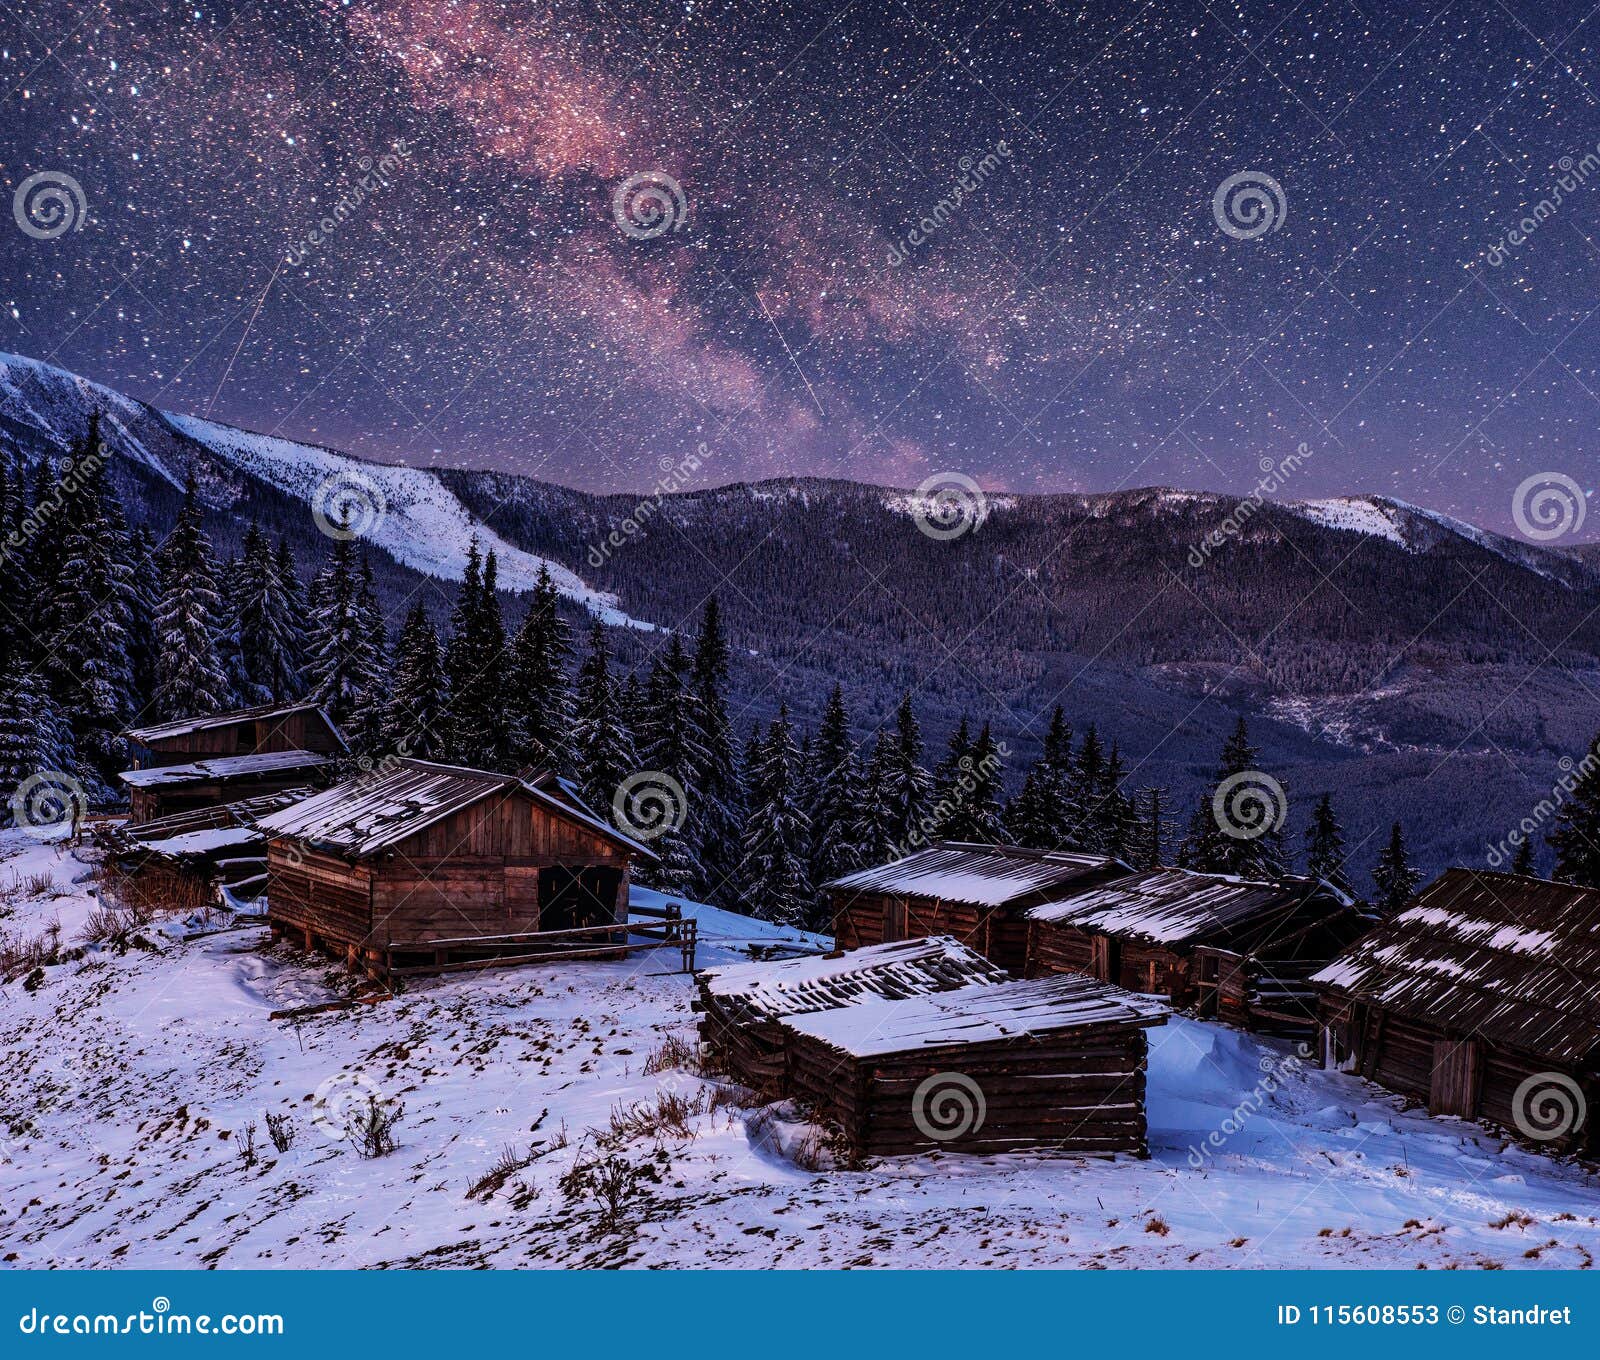 Alberi Innevati E Paesino Di Montagna Di Inverno Magico Paesaggio Di Inverno Cielo Notturno Vibrante Con Le Stelle E La Nebulosa Immagine Stock Immagine Di Paesaggio Alpe